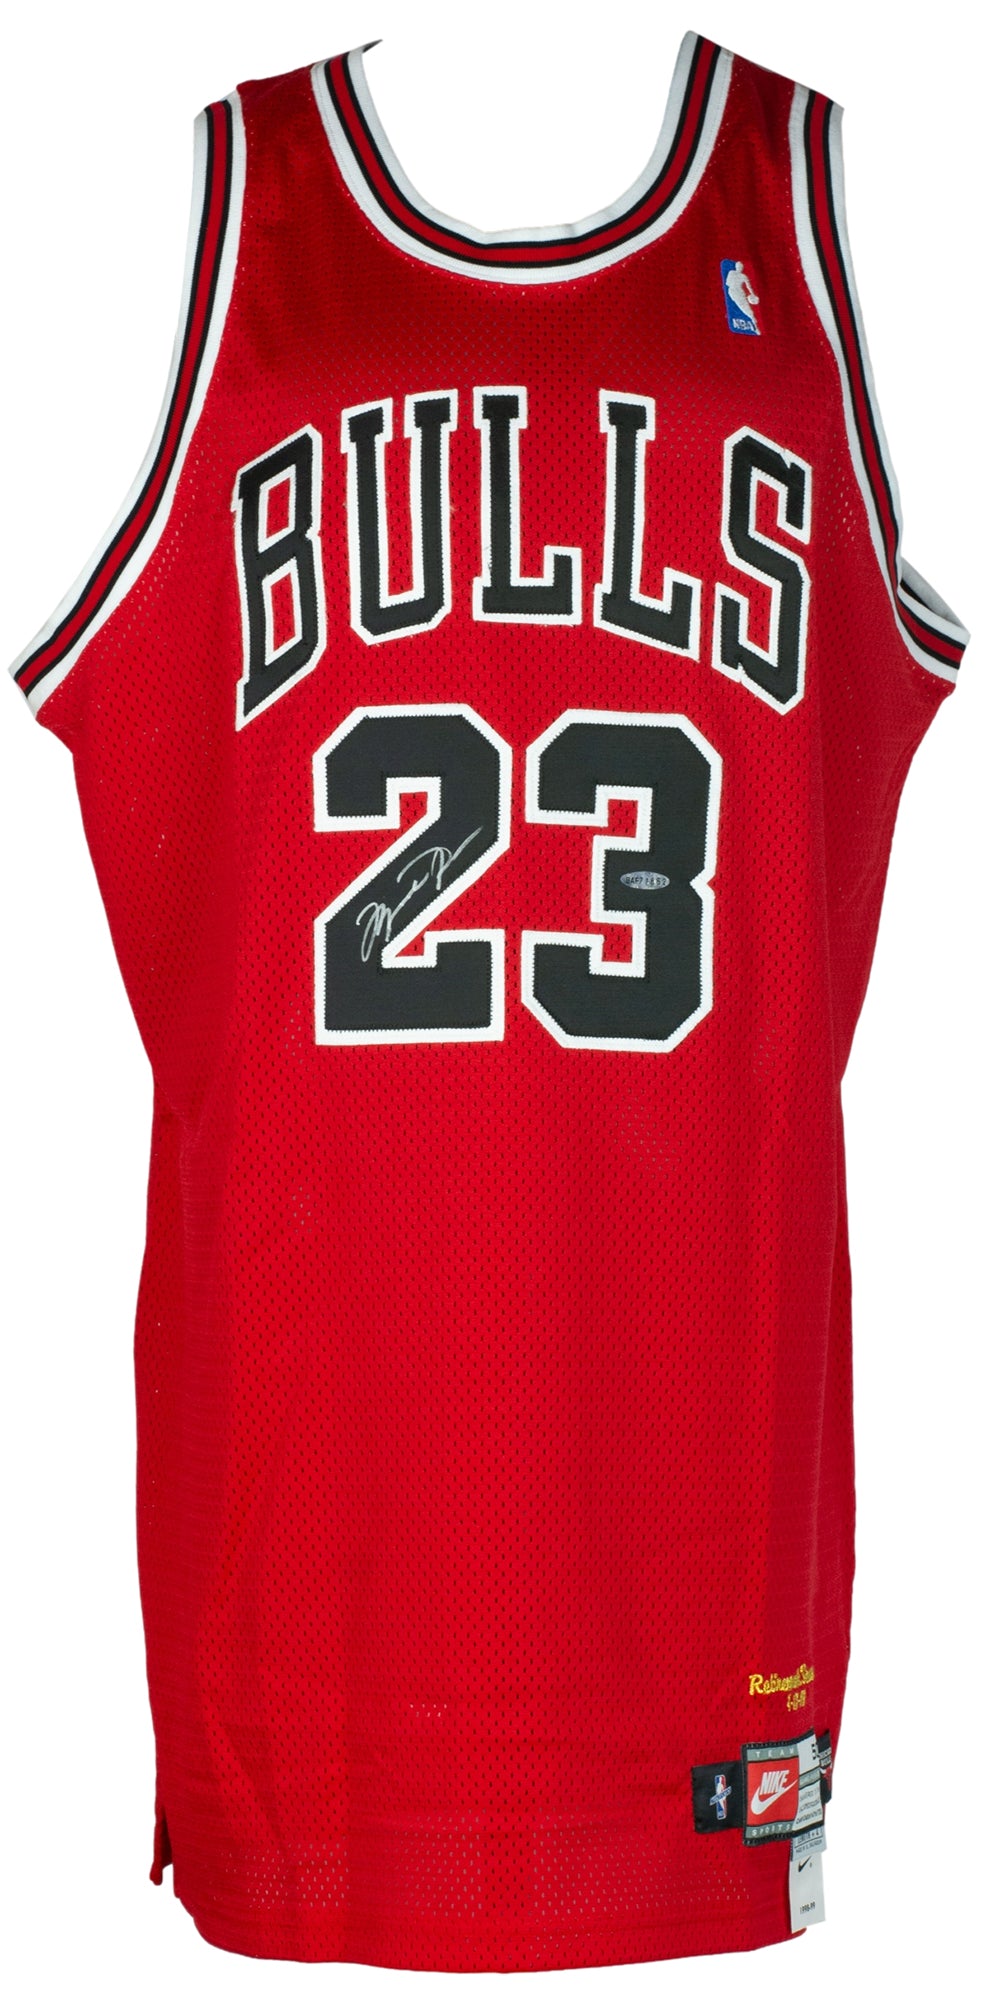 Chicago Bulls Nike Jerseys, Bulls Uniforms